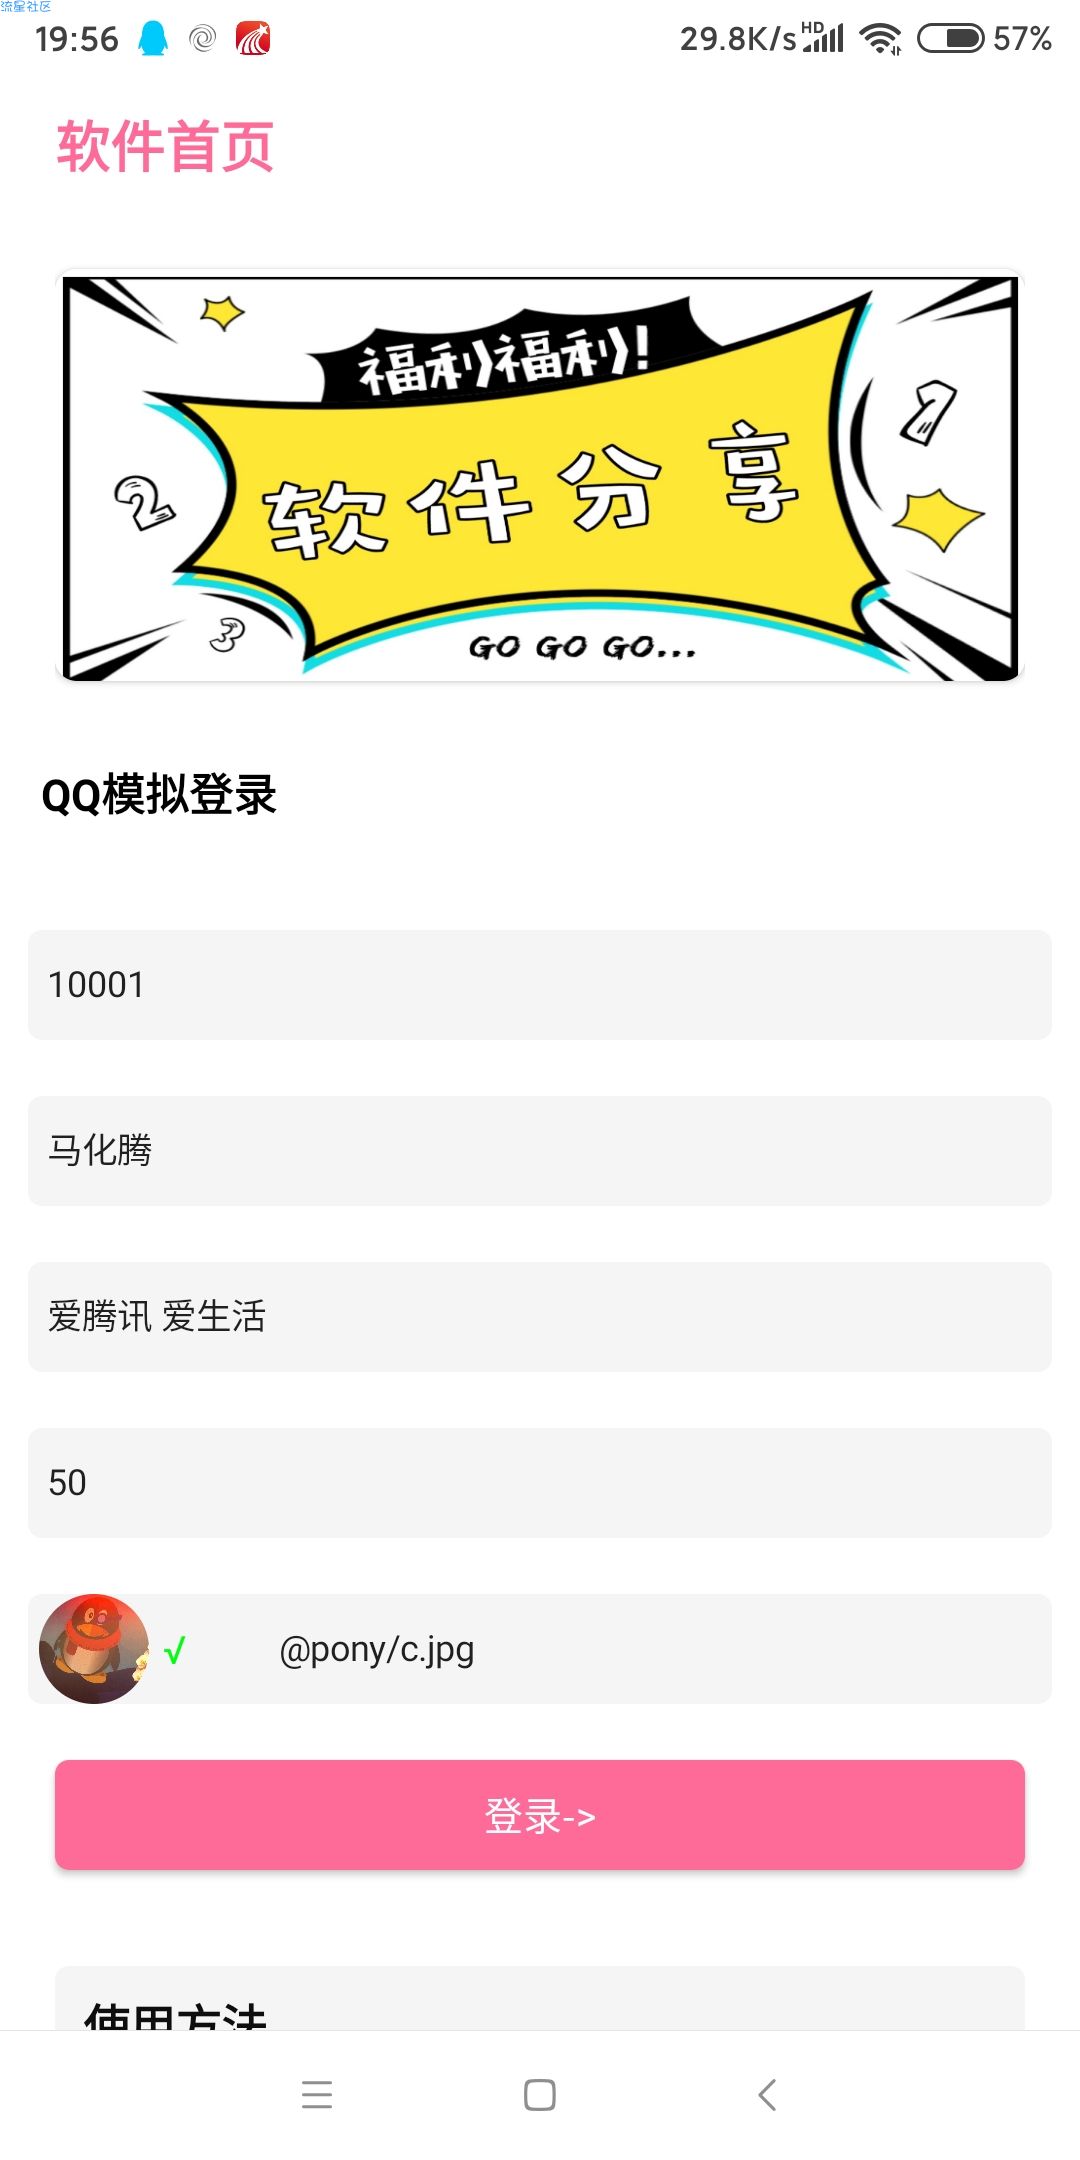 【分享】QQ模拟登入  任何QQ都可以模拟